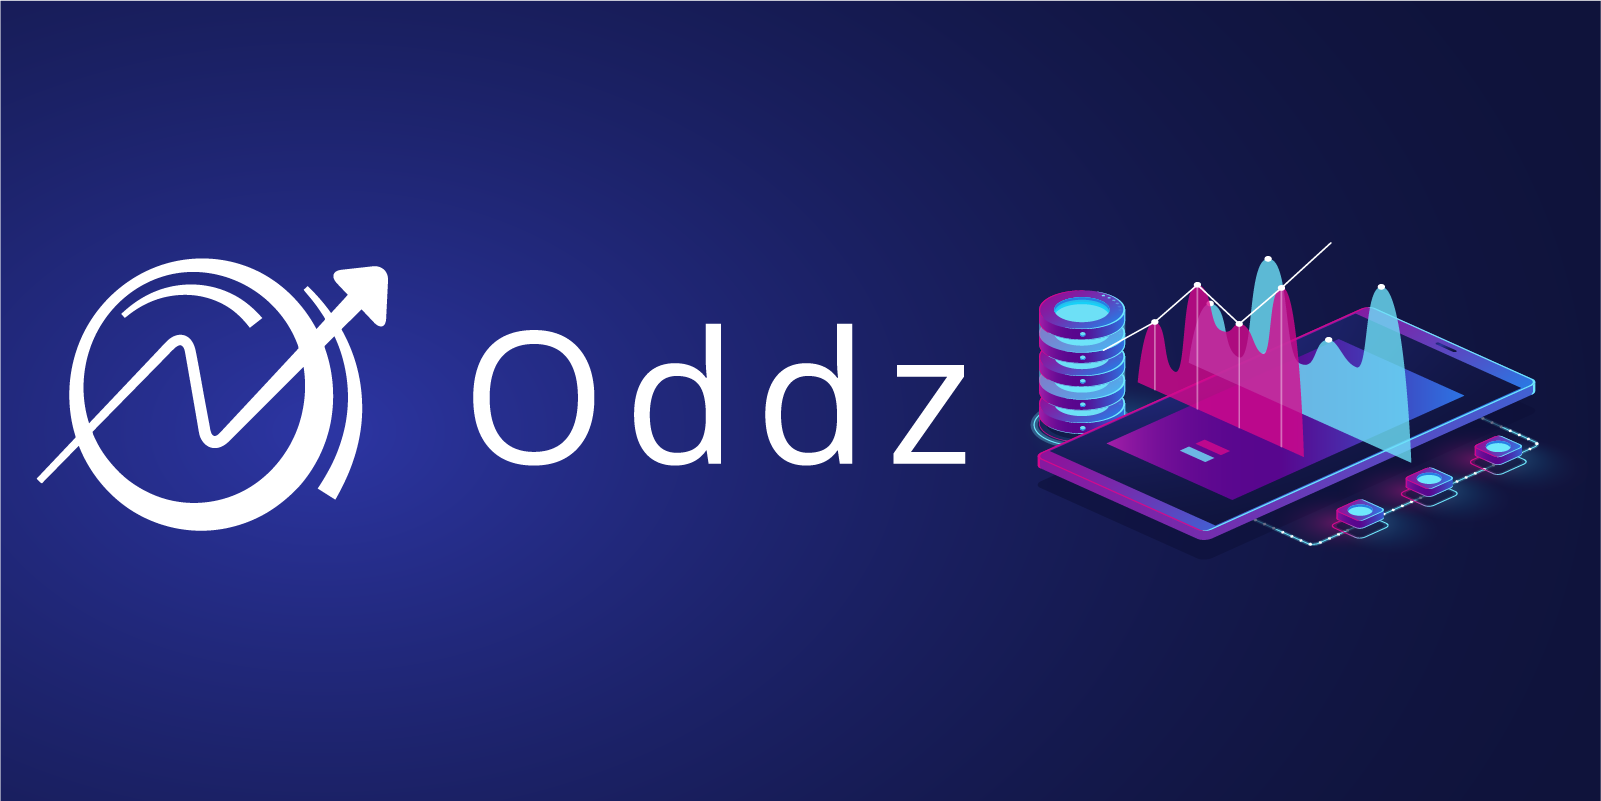 Oddz Finance - Une plateforme multi-chaîne pour le trading de produits dérivés sur cryptomonnaies